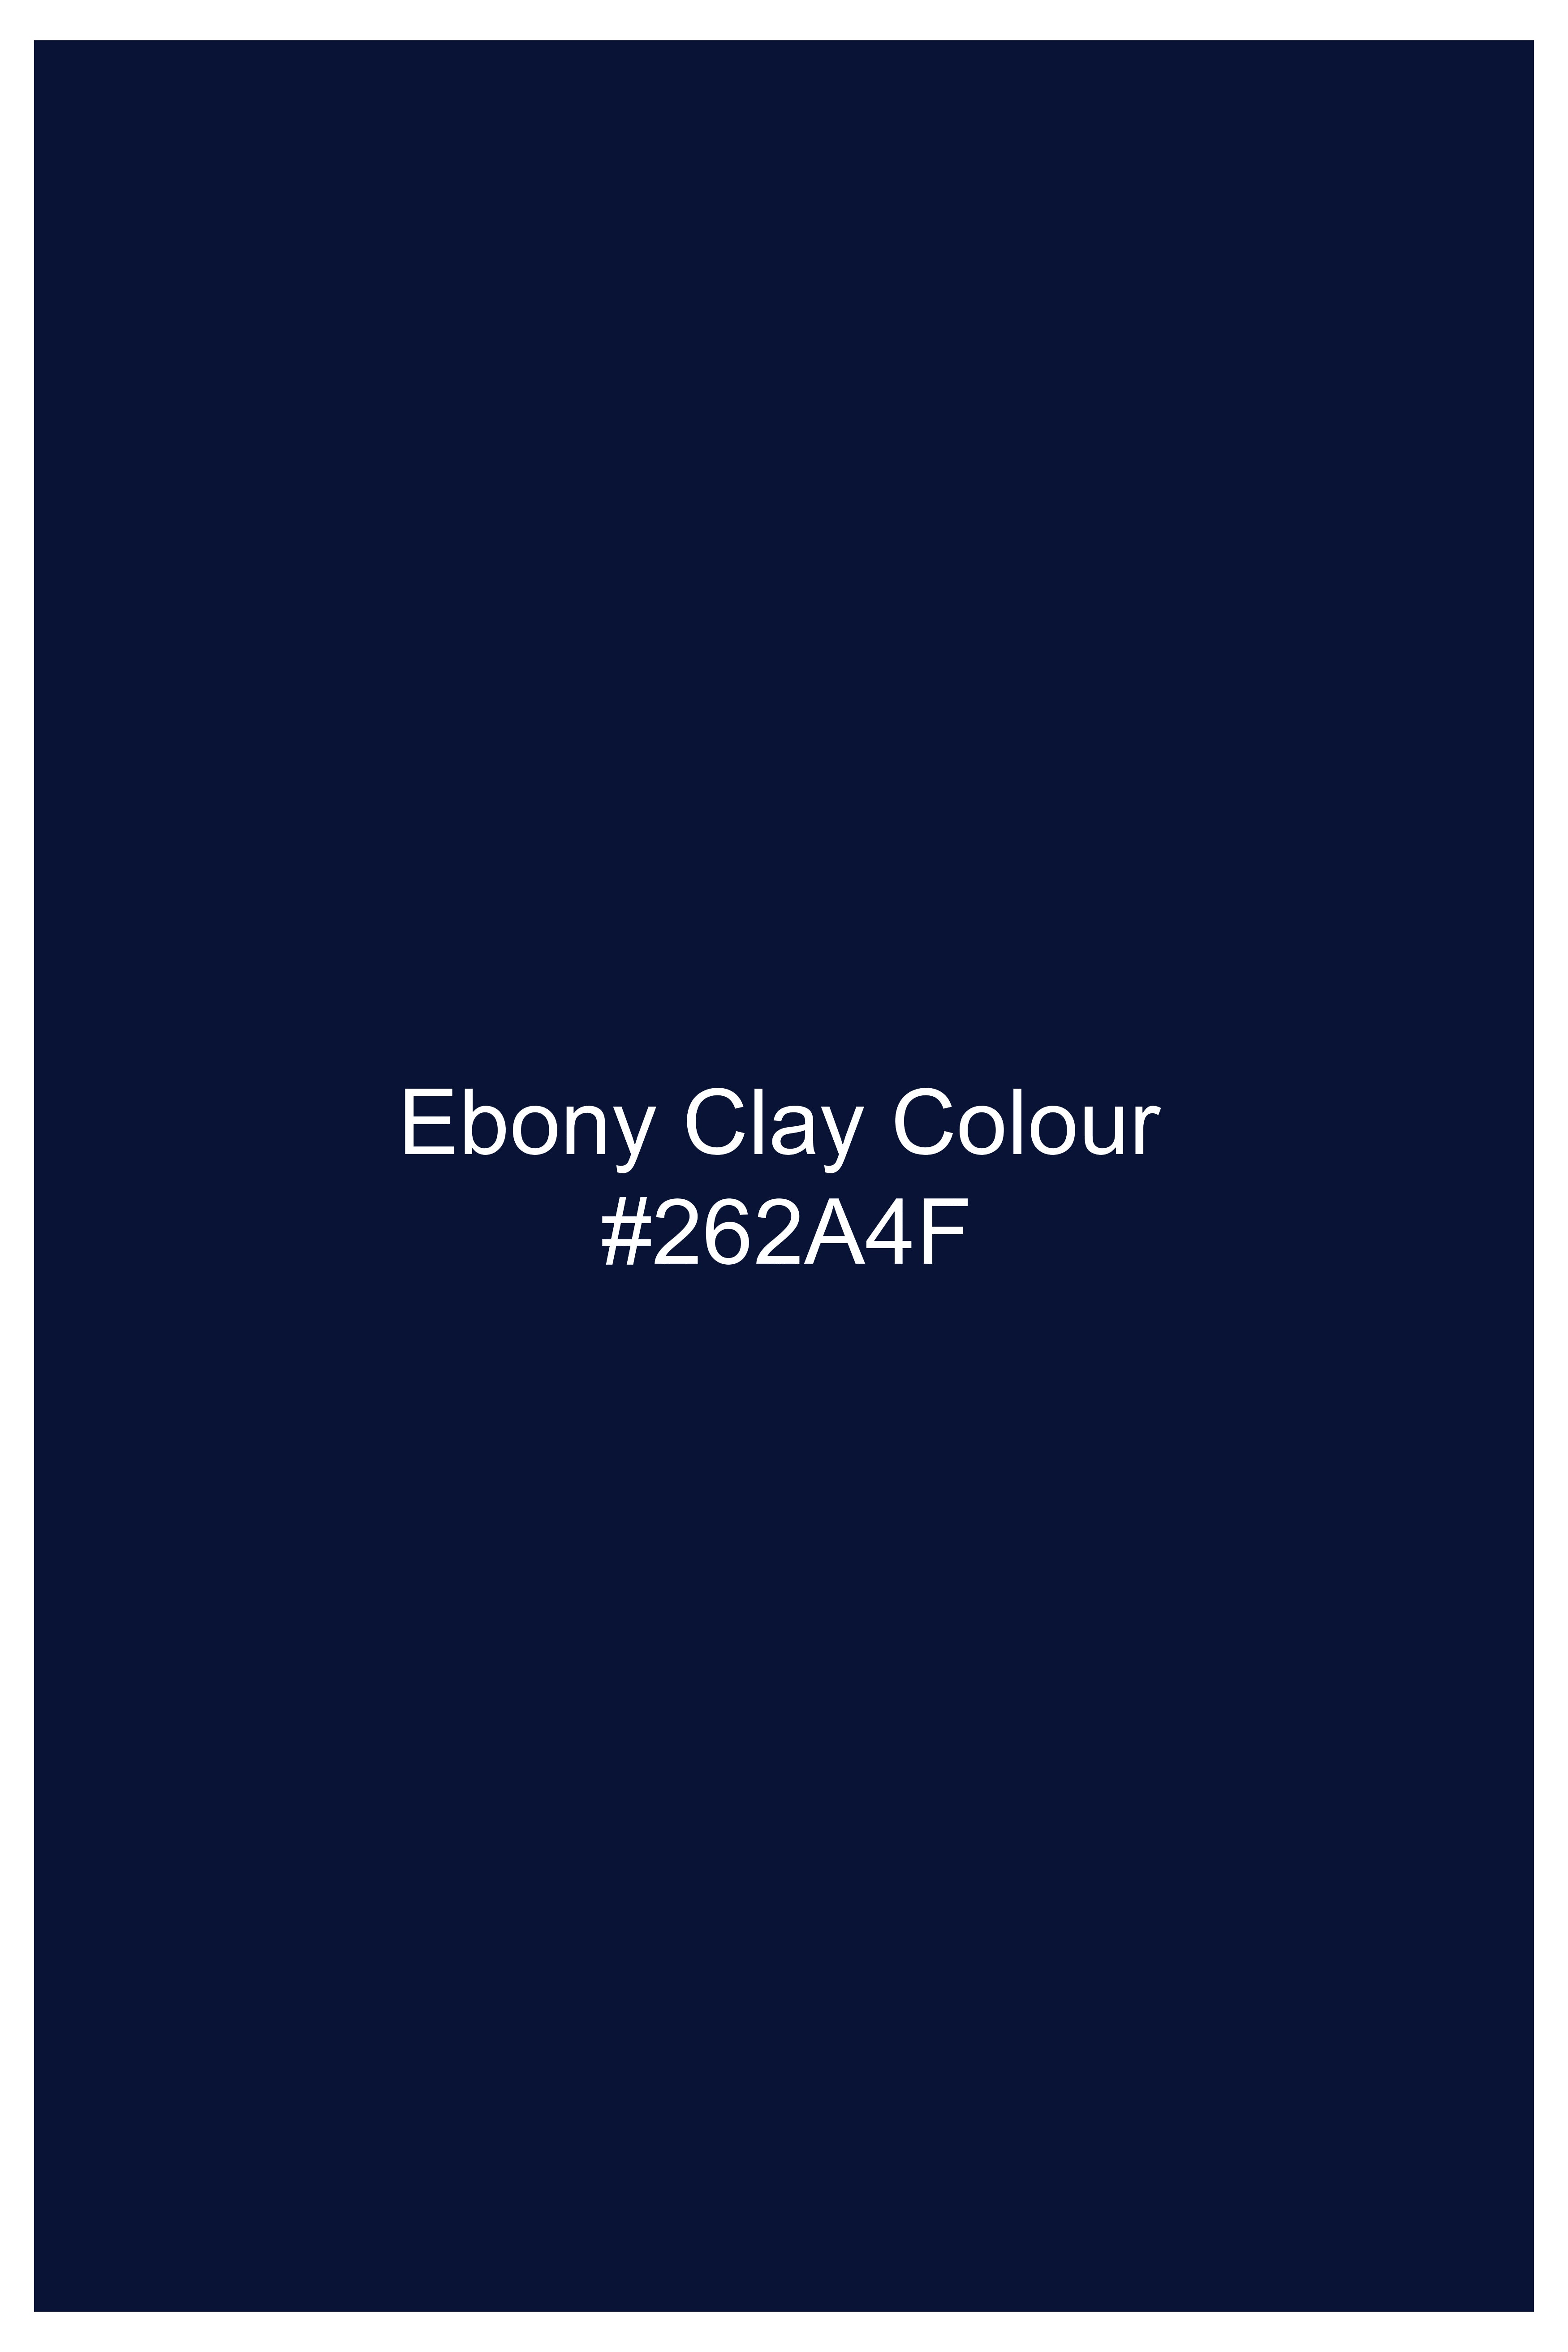 Ebony Clay Blue Wool Rich Designer Suit ST2761-D132-36, ST2761-D132-38, ST2761-D132-40, ST2761-D132-42, ST2761-D132-44, ST2761-D132-46, ST2761-D132-48, ST2761-D132-50, ST2761-D132-52, ST2761-D132-54, ST2761-D132-56, ST2761-D132-58, ST2761-D132-60